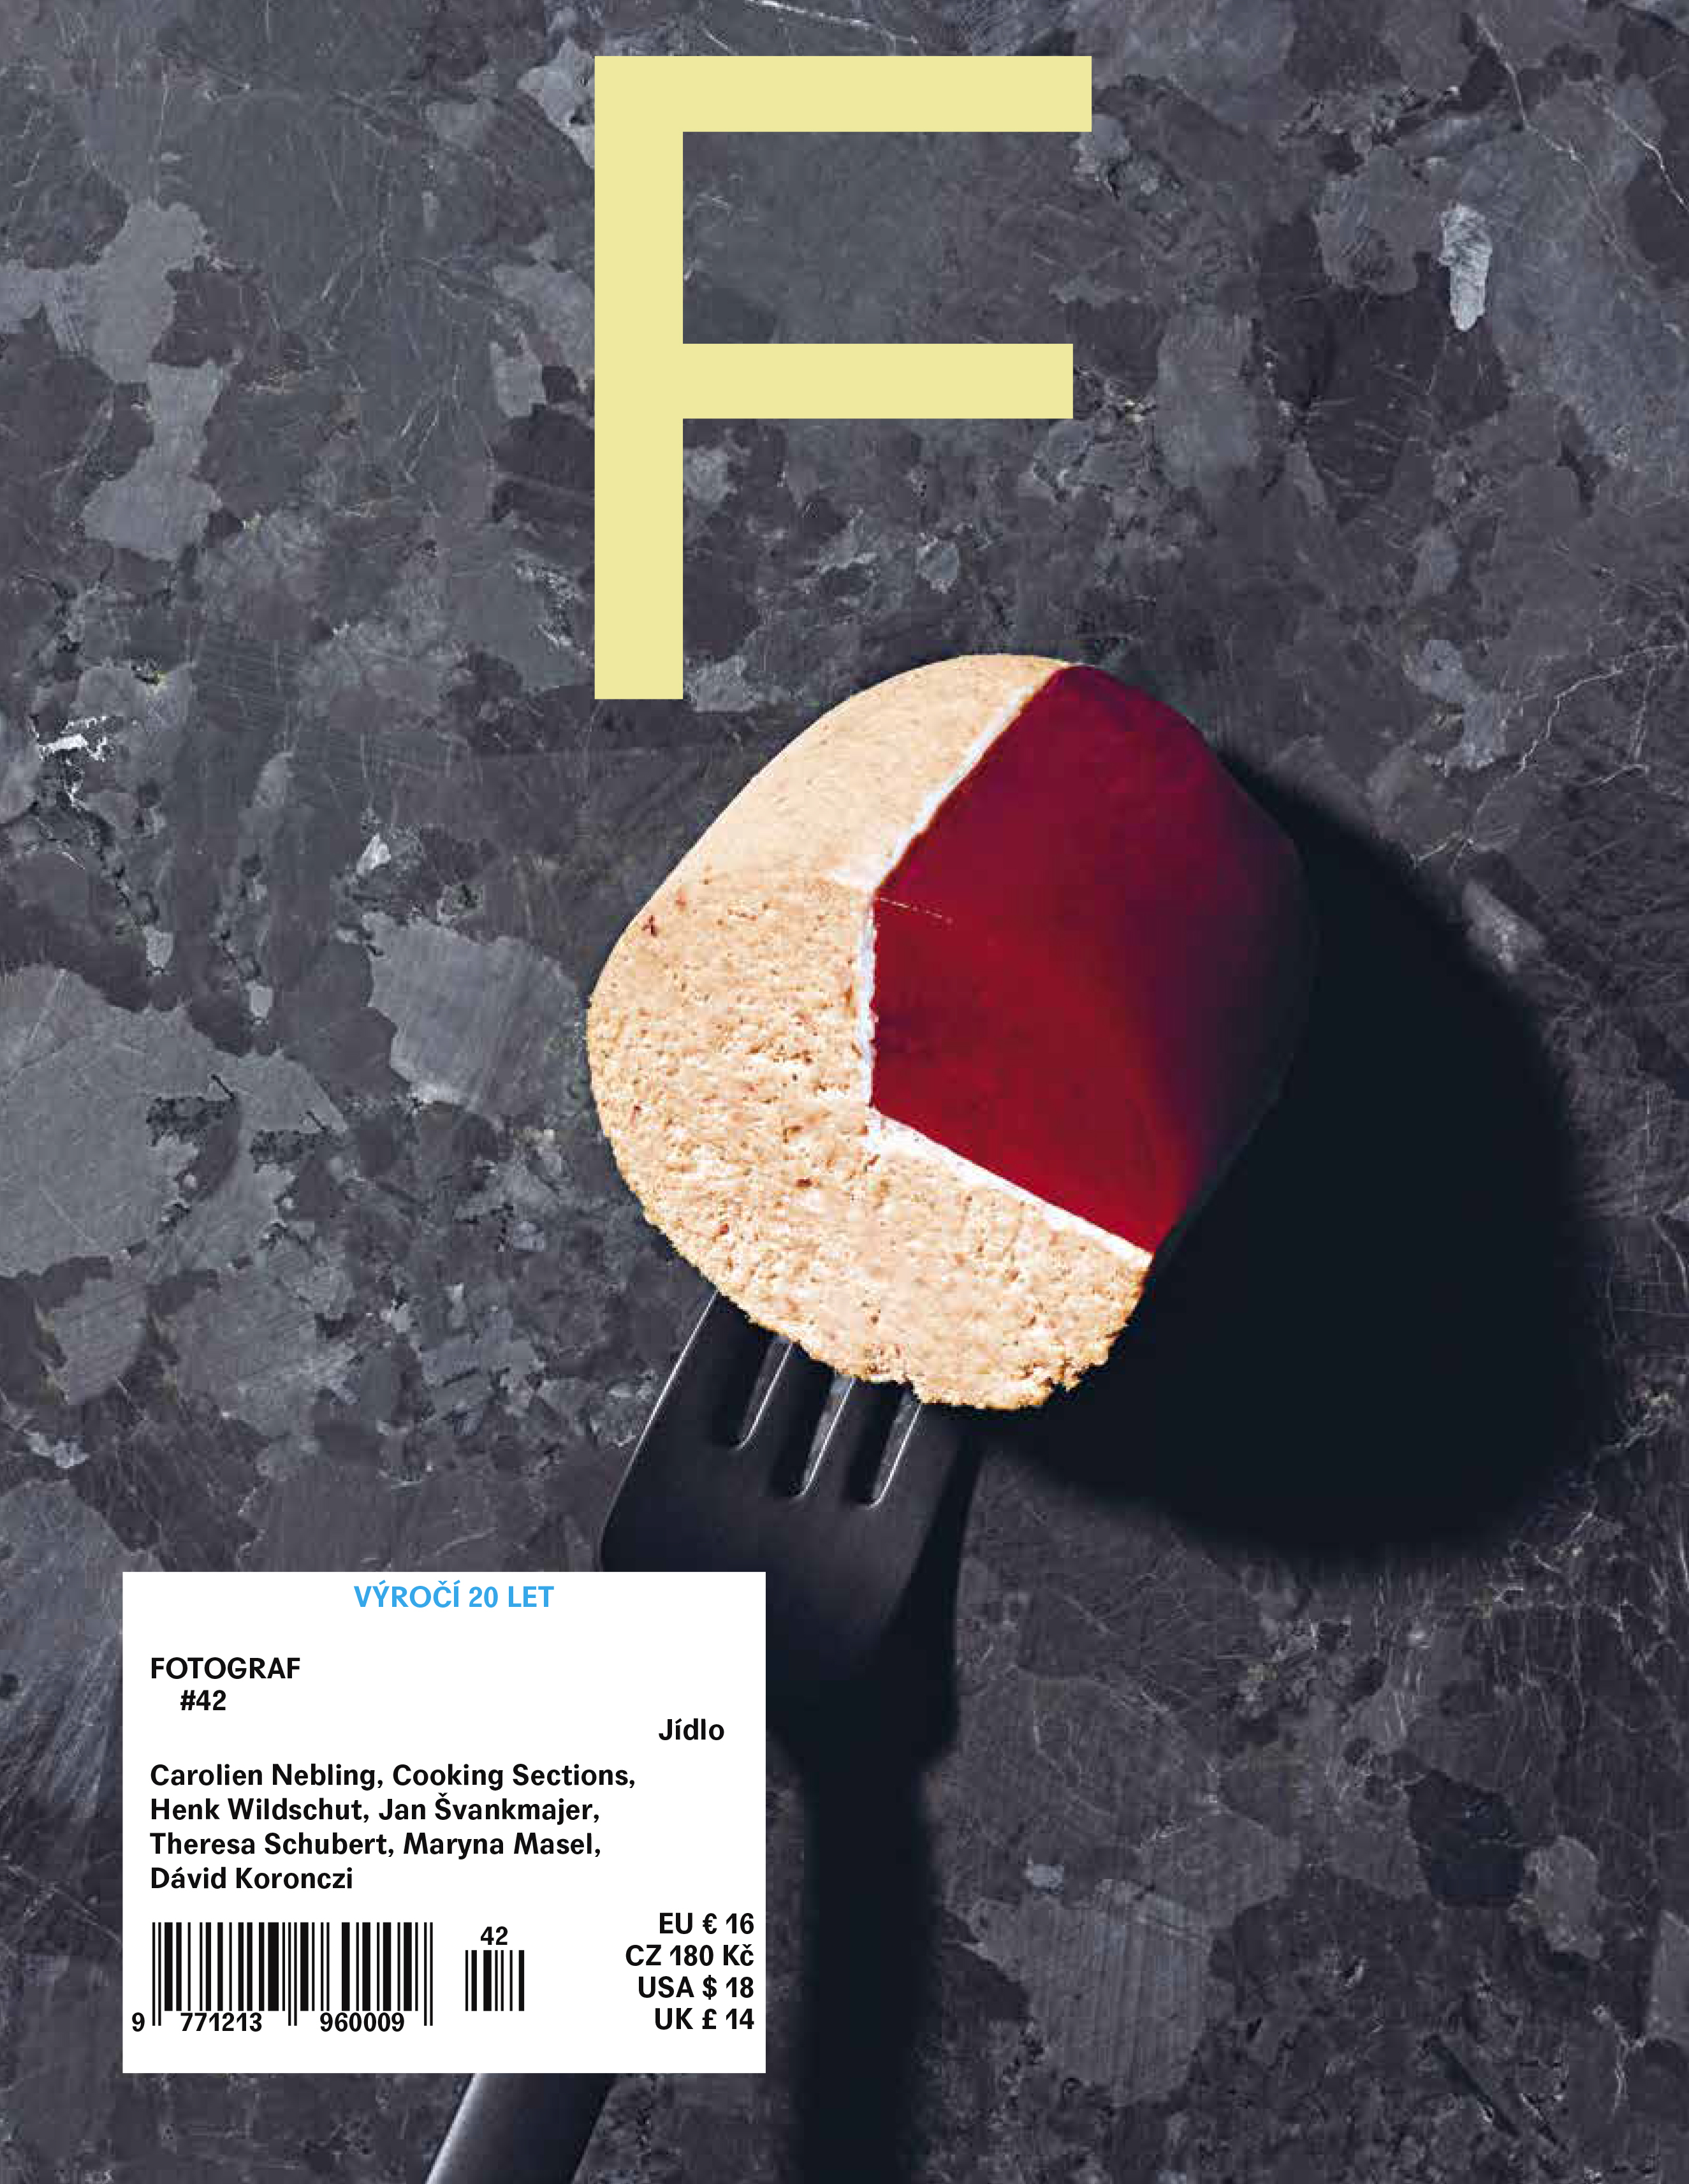 obálka časopisu Fotograf Magazine CZ (42) jídlo